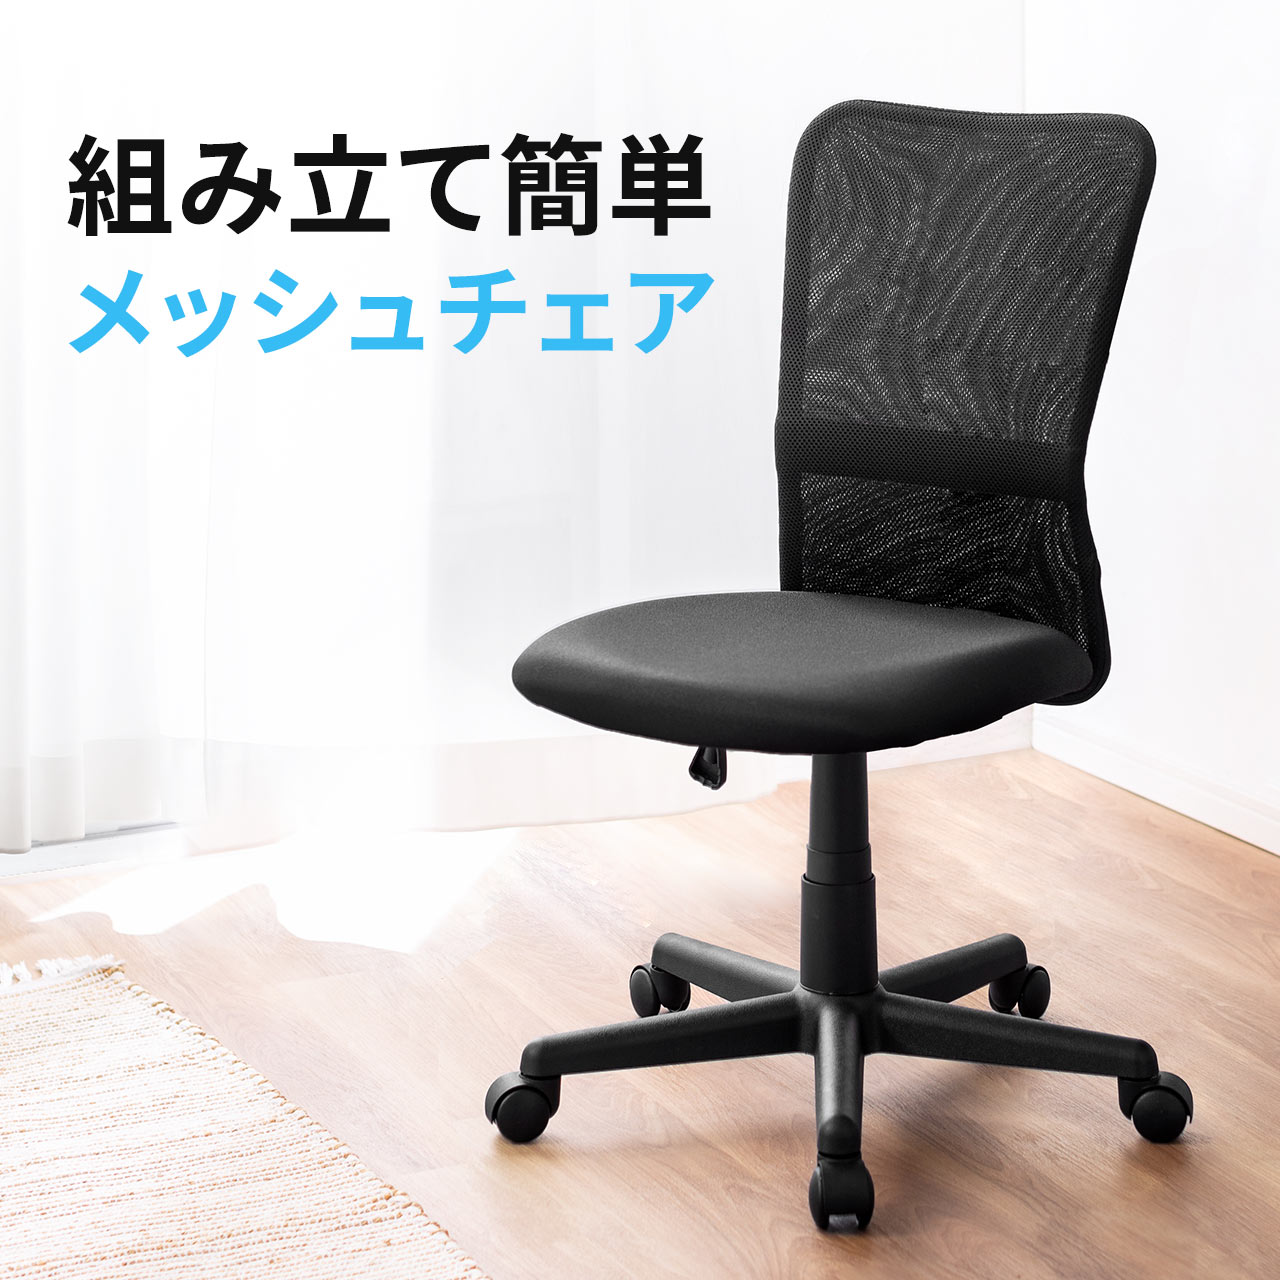 オフィスチェア メッシュ ネットチェア デスクチェア キャスター シンプル コンパクトデザイン パソコンチェア 椅子 腰痛対策 在宅ワーク 在宅